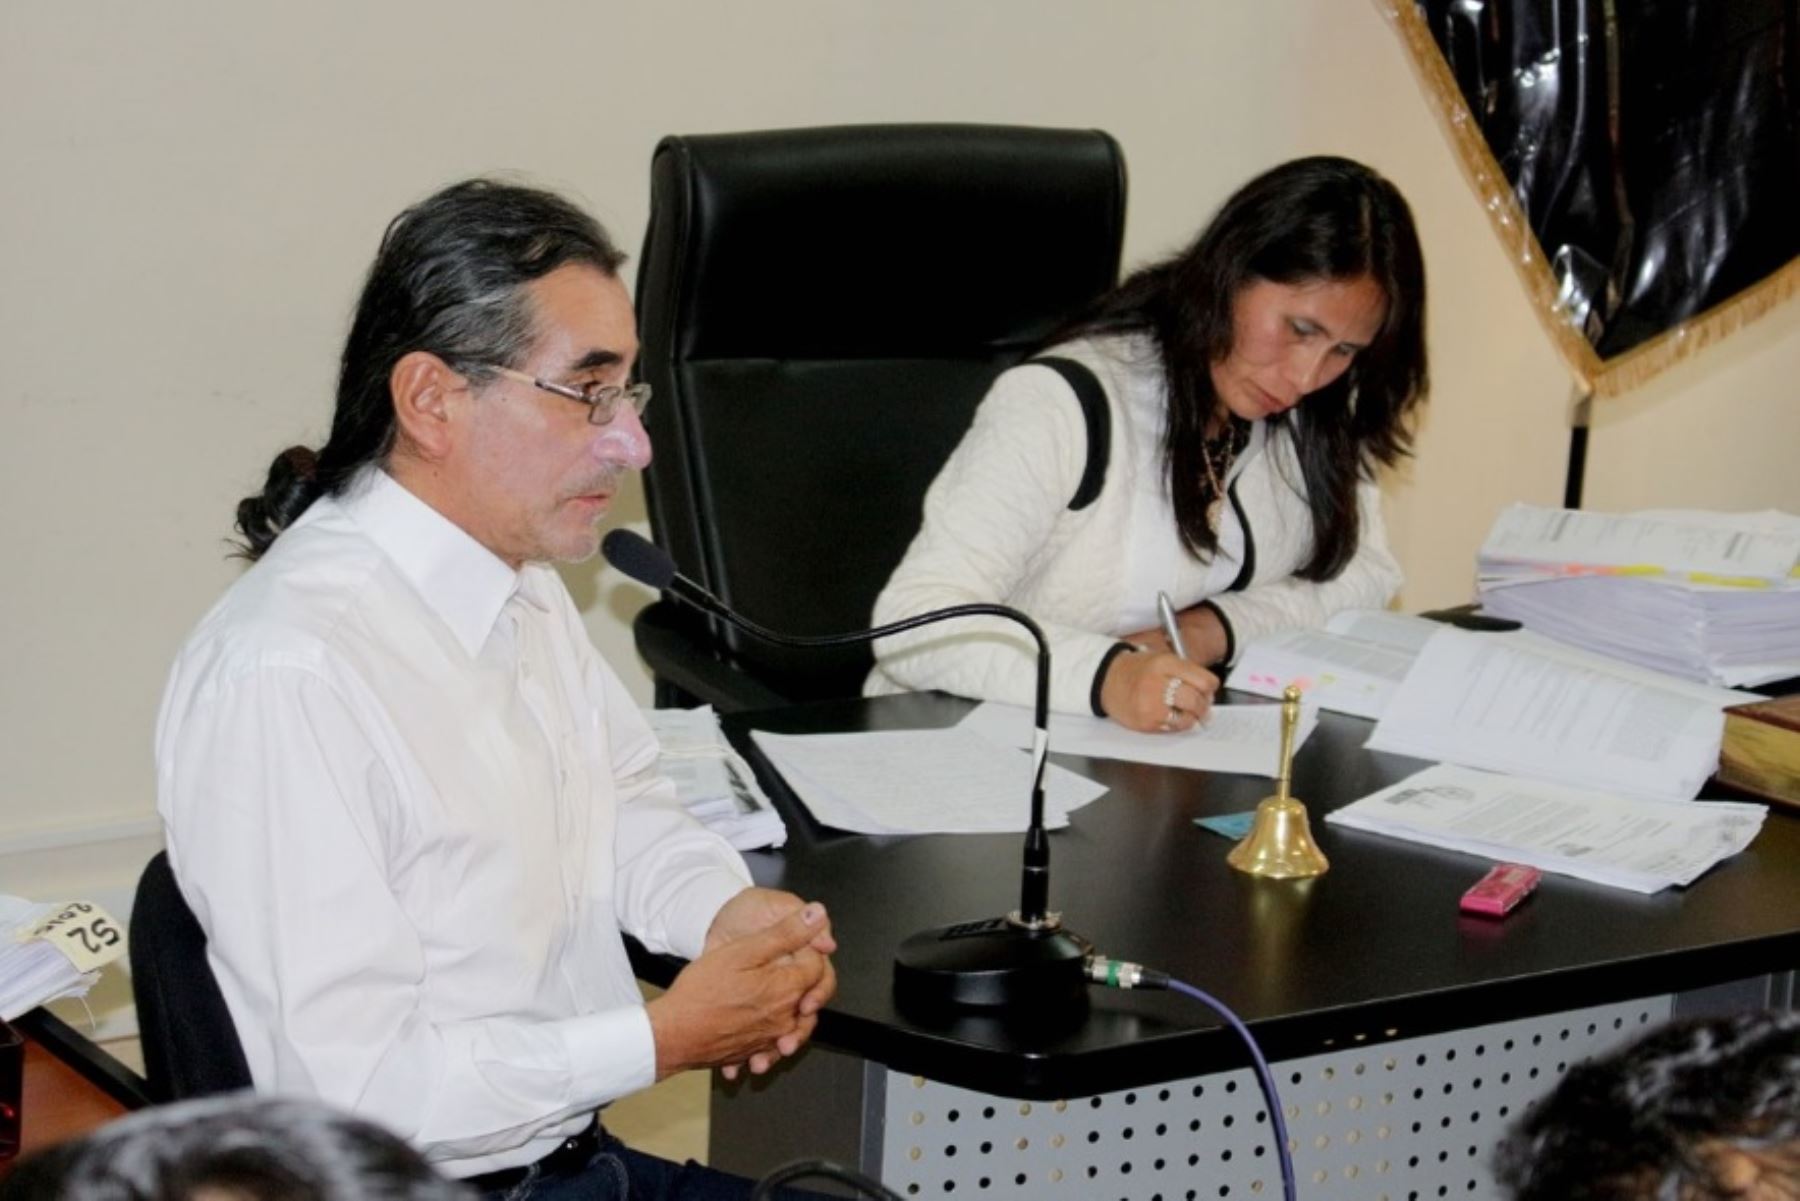 La Corte Superior de Justicia de Áncash condenó al suspendido gobernador regional de Áncash, Waldo Río Salcedo, a un año de inhabilitación para ejercer la función pública, por el delito de abuso de autoridad.